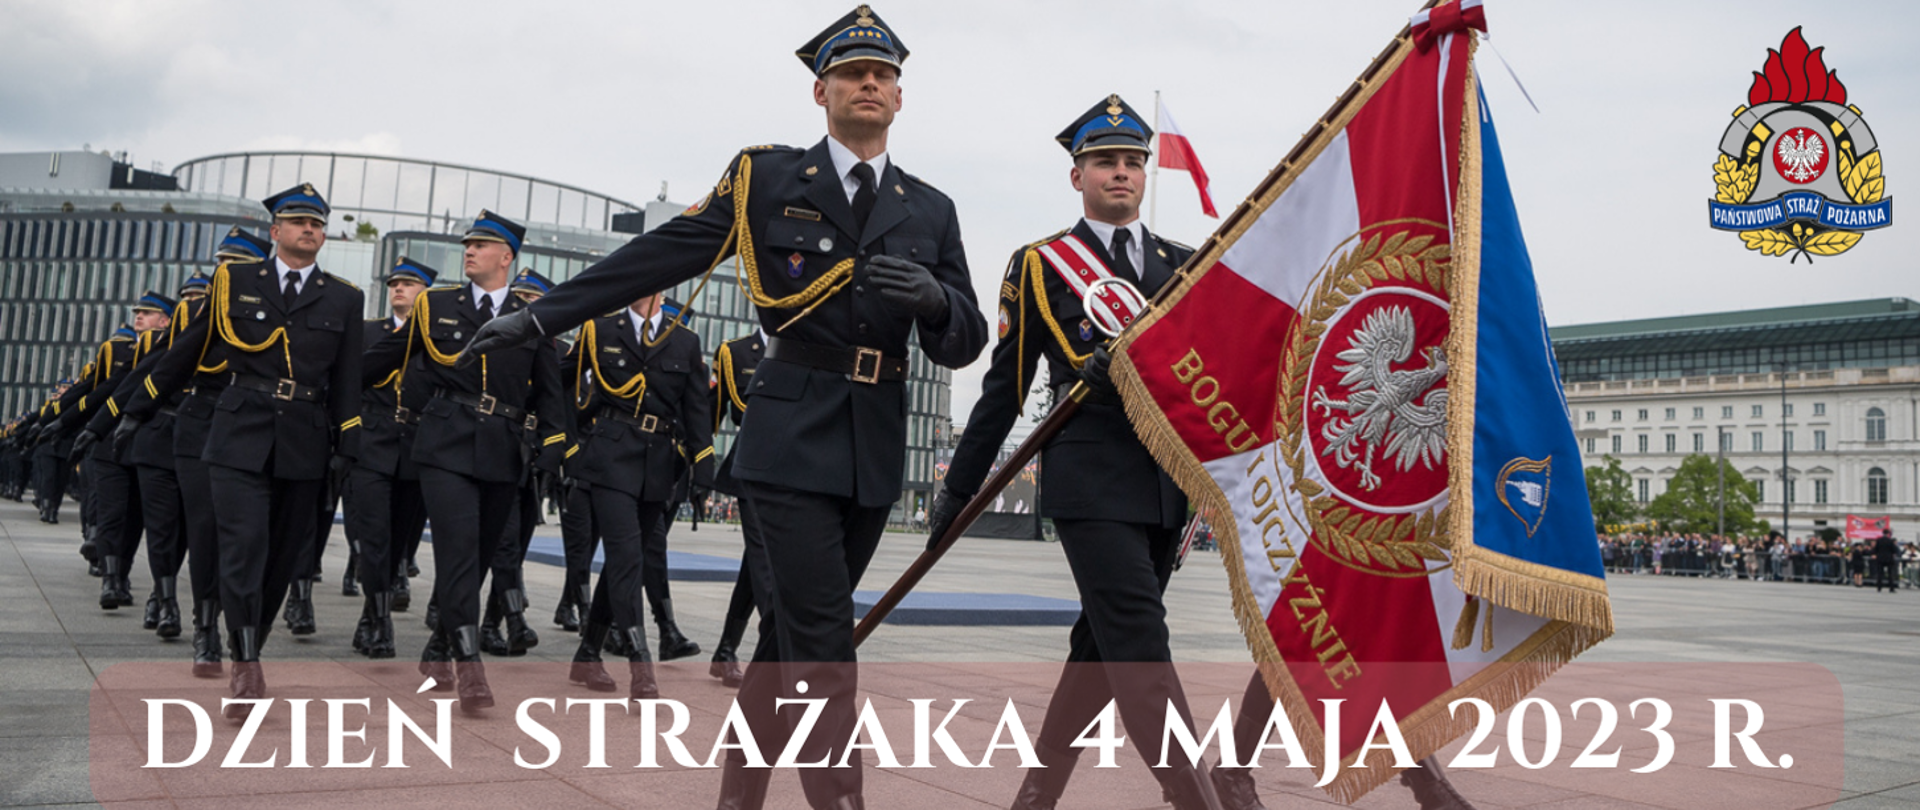 Strażacy podczas Centralnych Obchodów Dnia Strażaka na Placu Piłsudskiego niosą sztandar